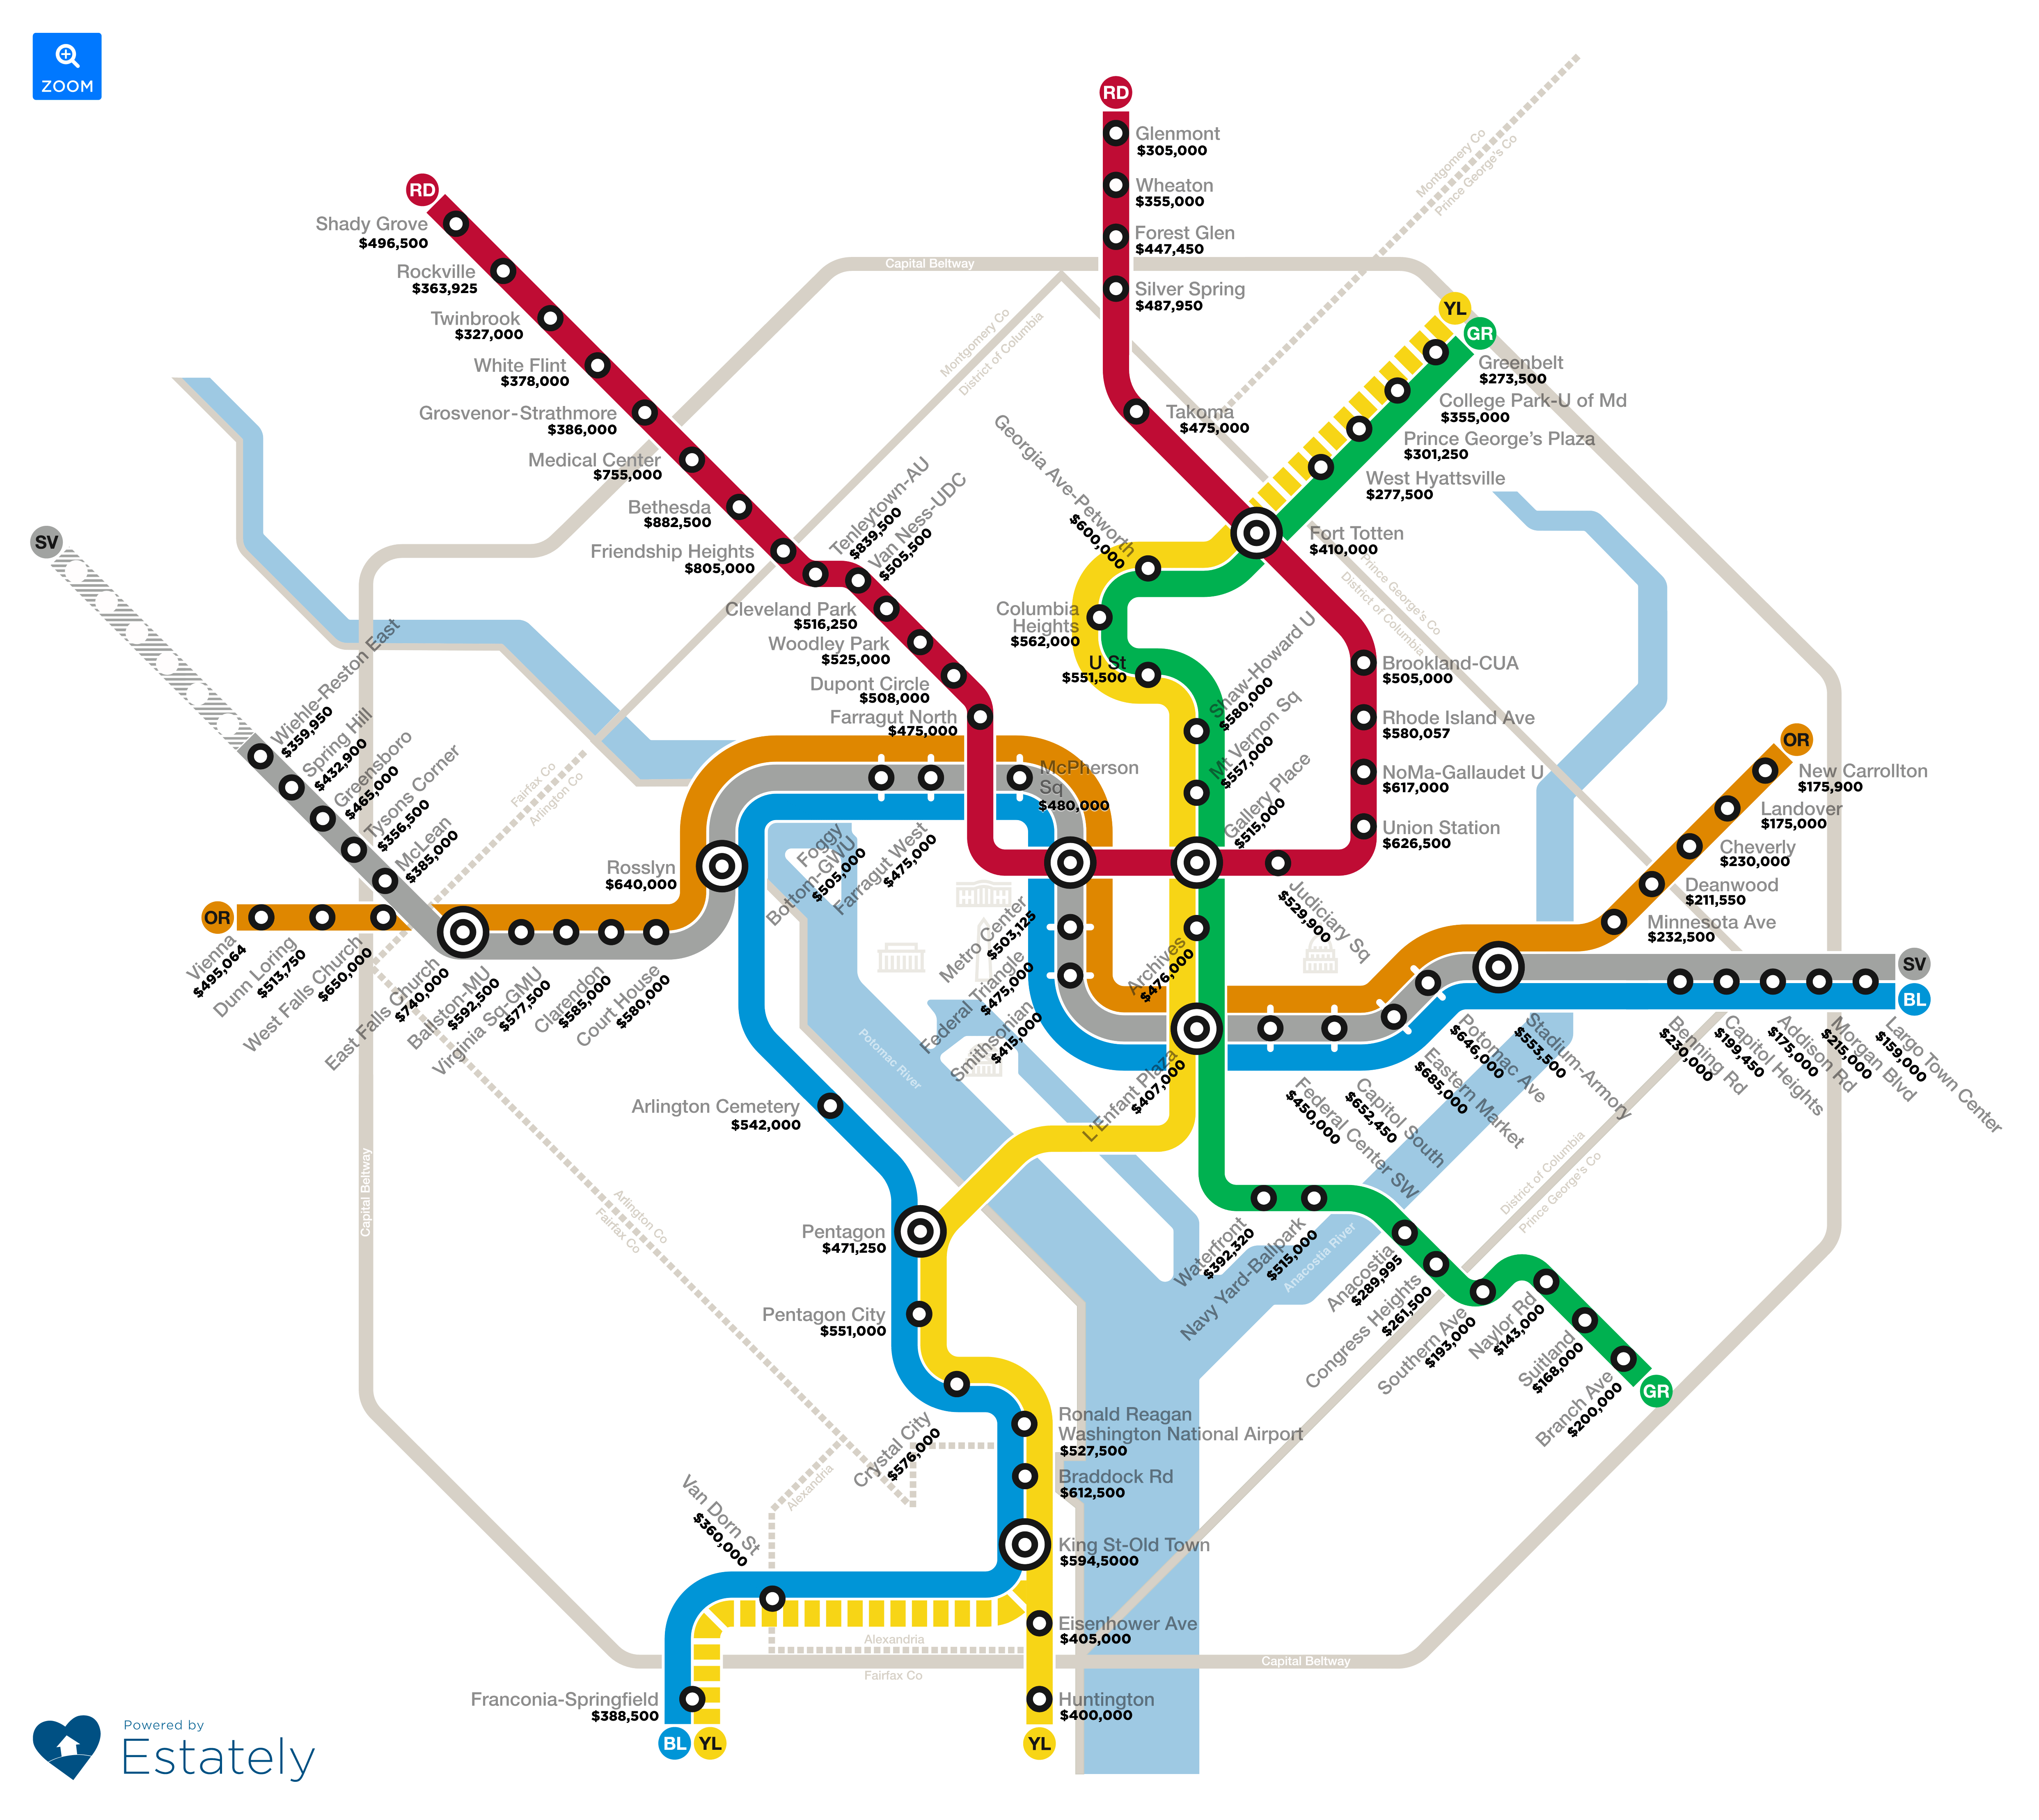 Washington DC Transit Stop Affordability Transit Map